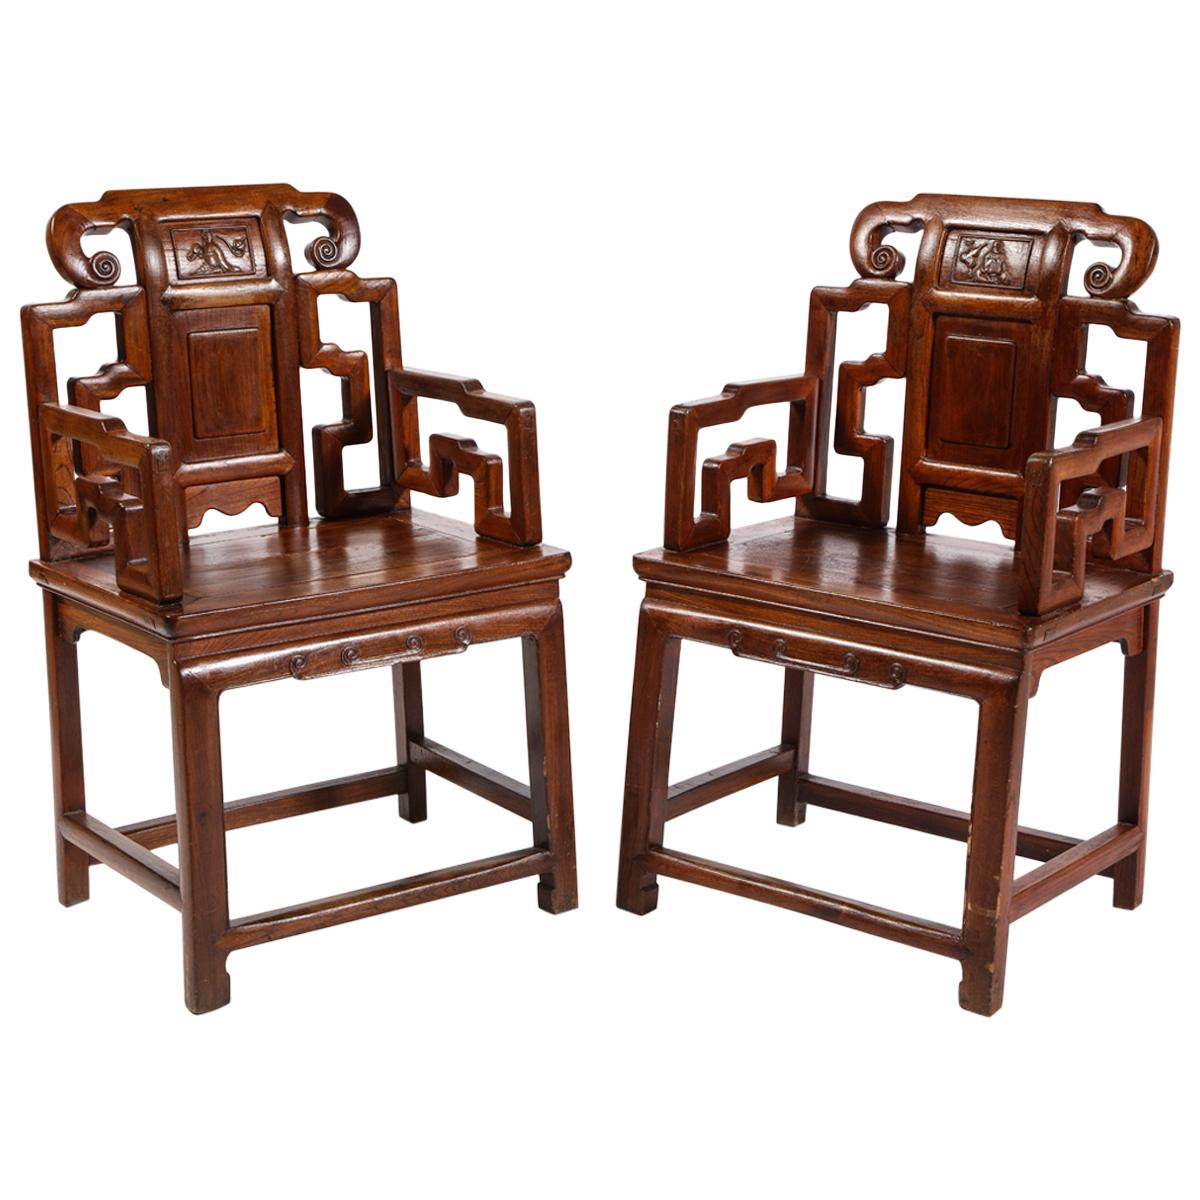 Paire de chaises chinoises en bois dur avec motifs ajourés et panneaux en haut-relief